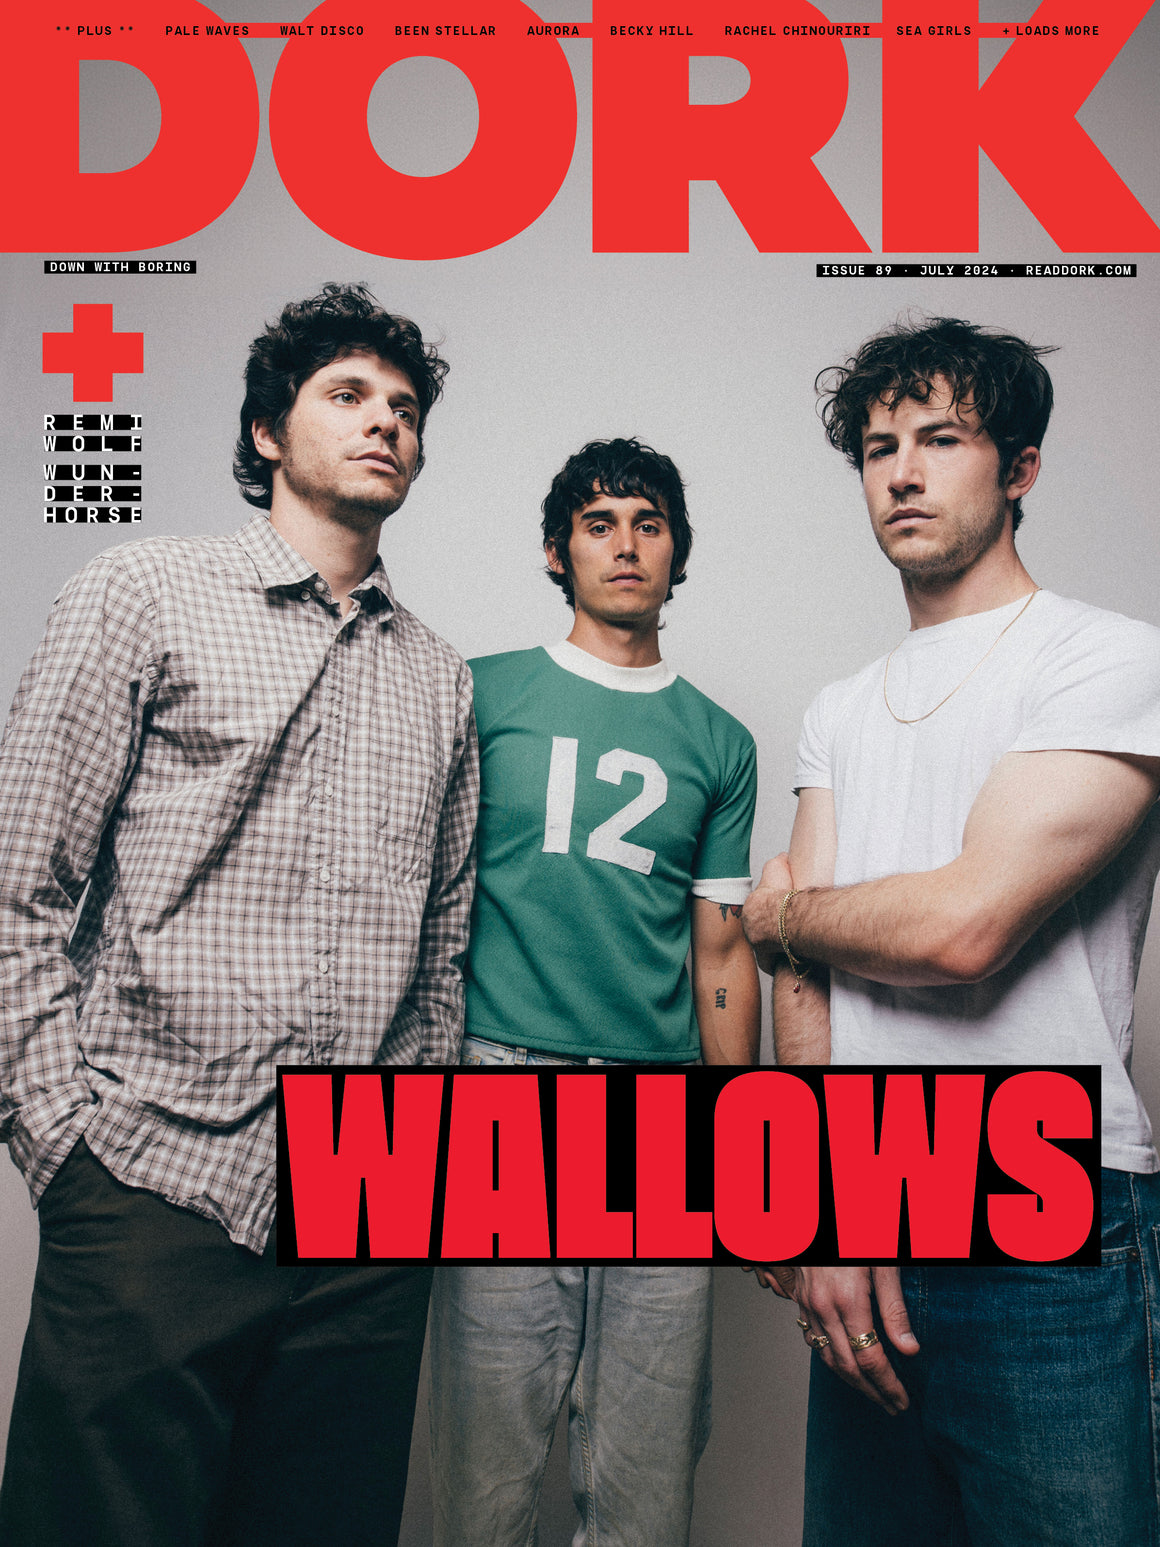 Dork Magazine July 2024 Wallows